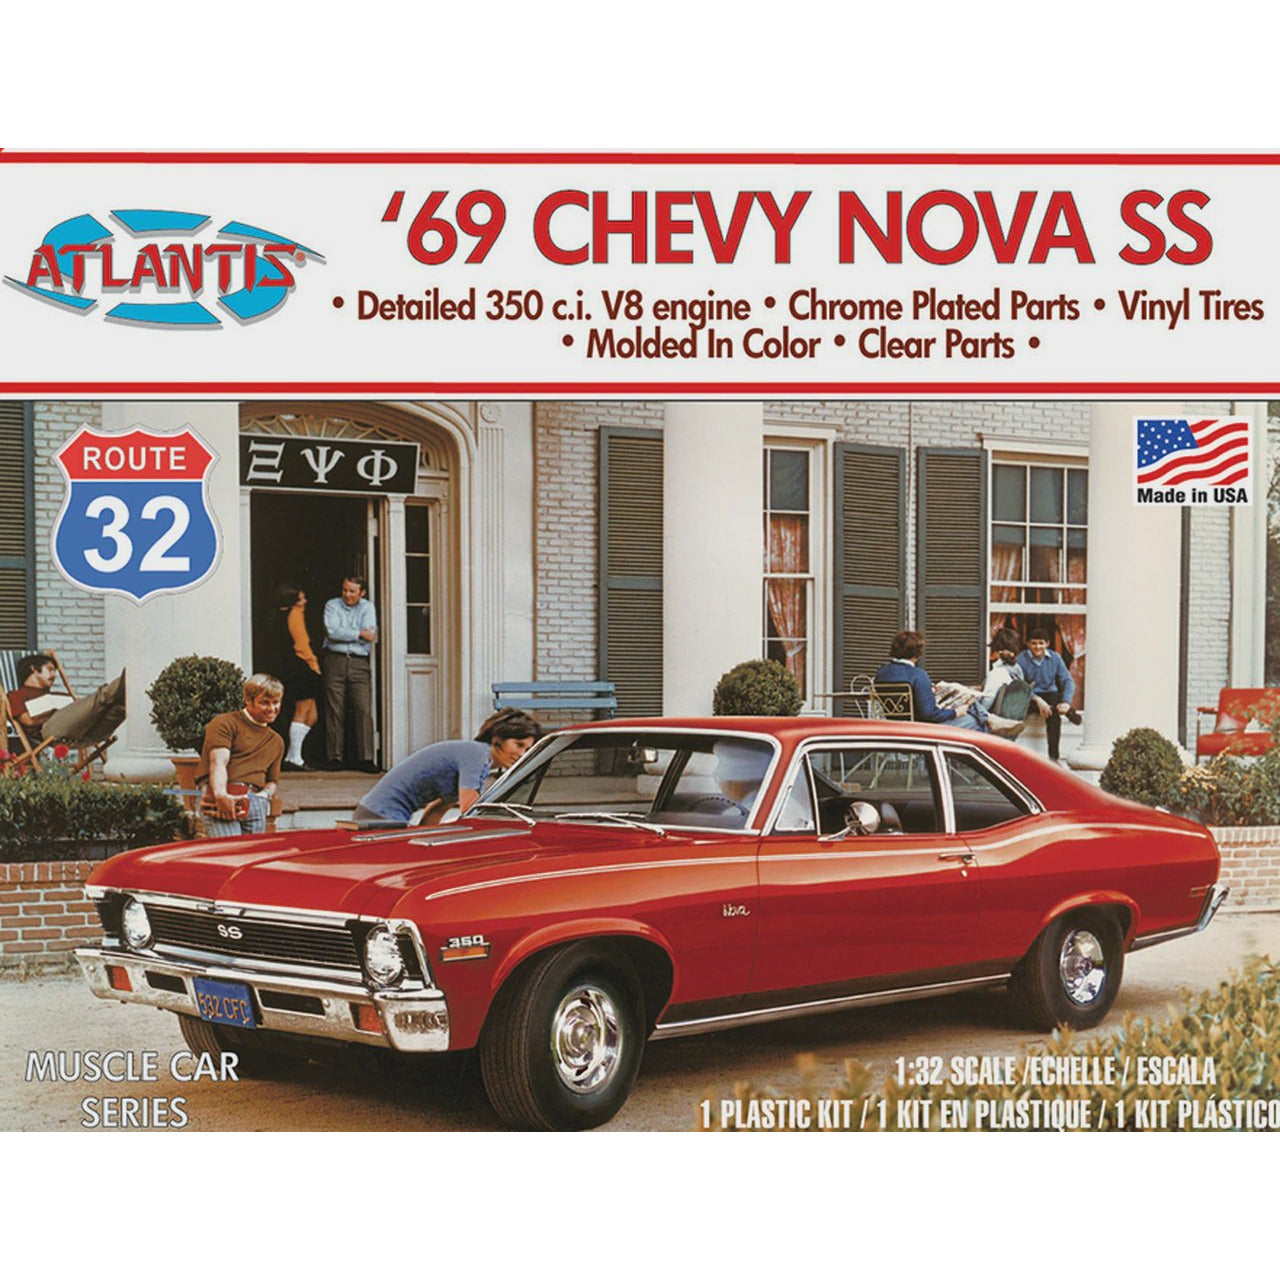 1969 Chevrolet Nova SS 1/32 #2006 by Atlantis